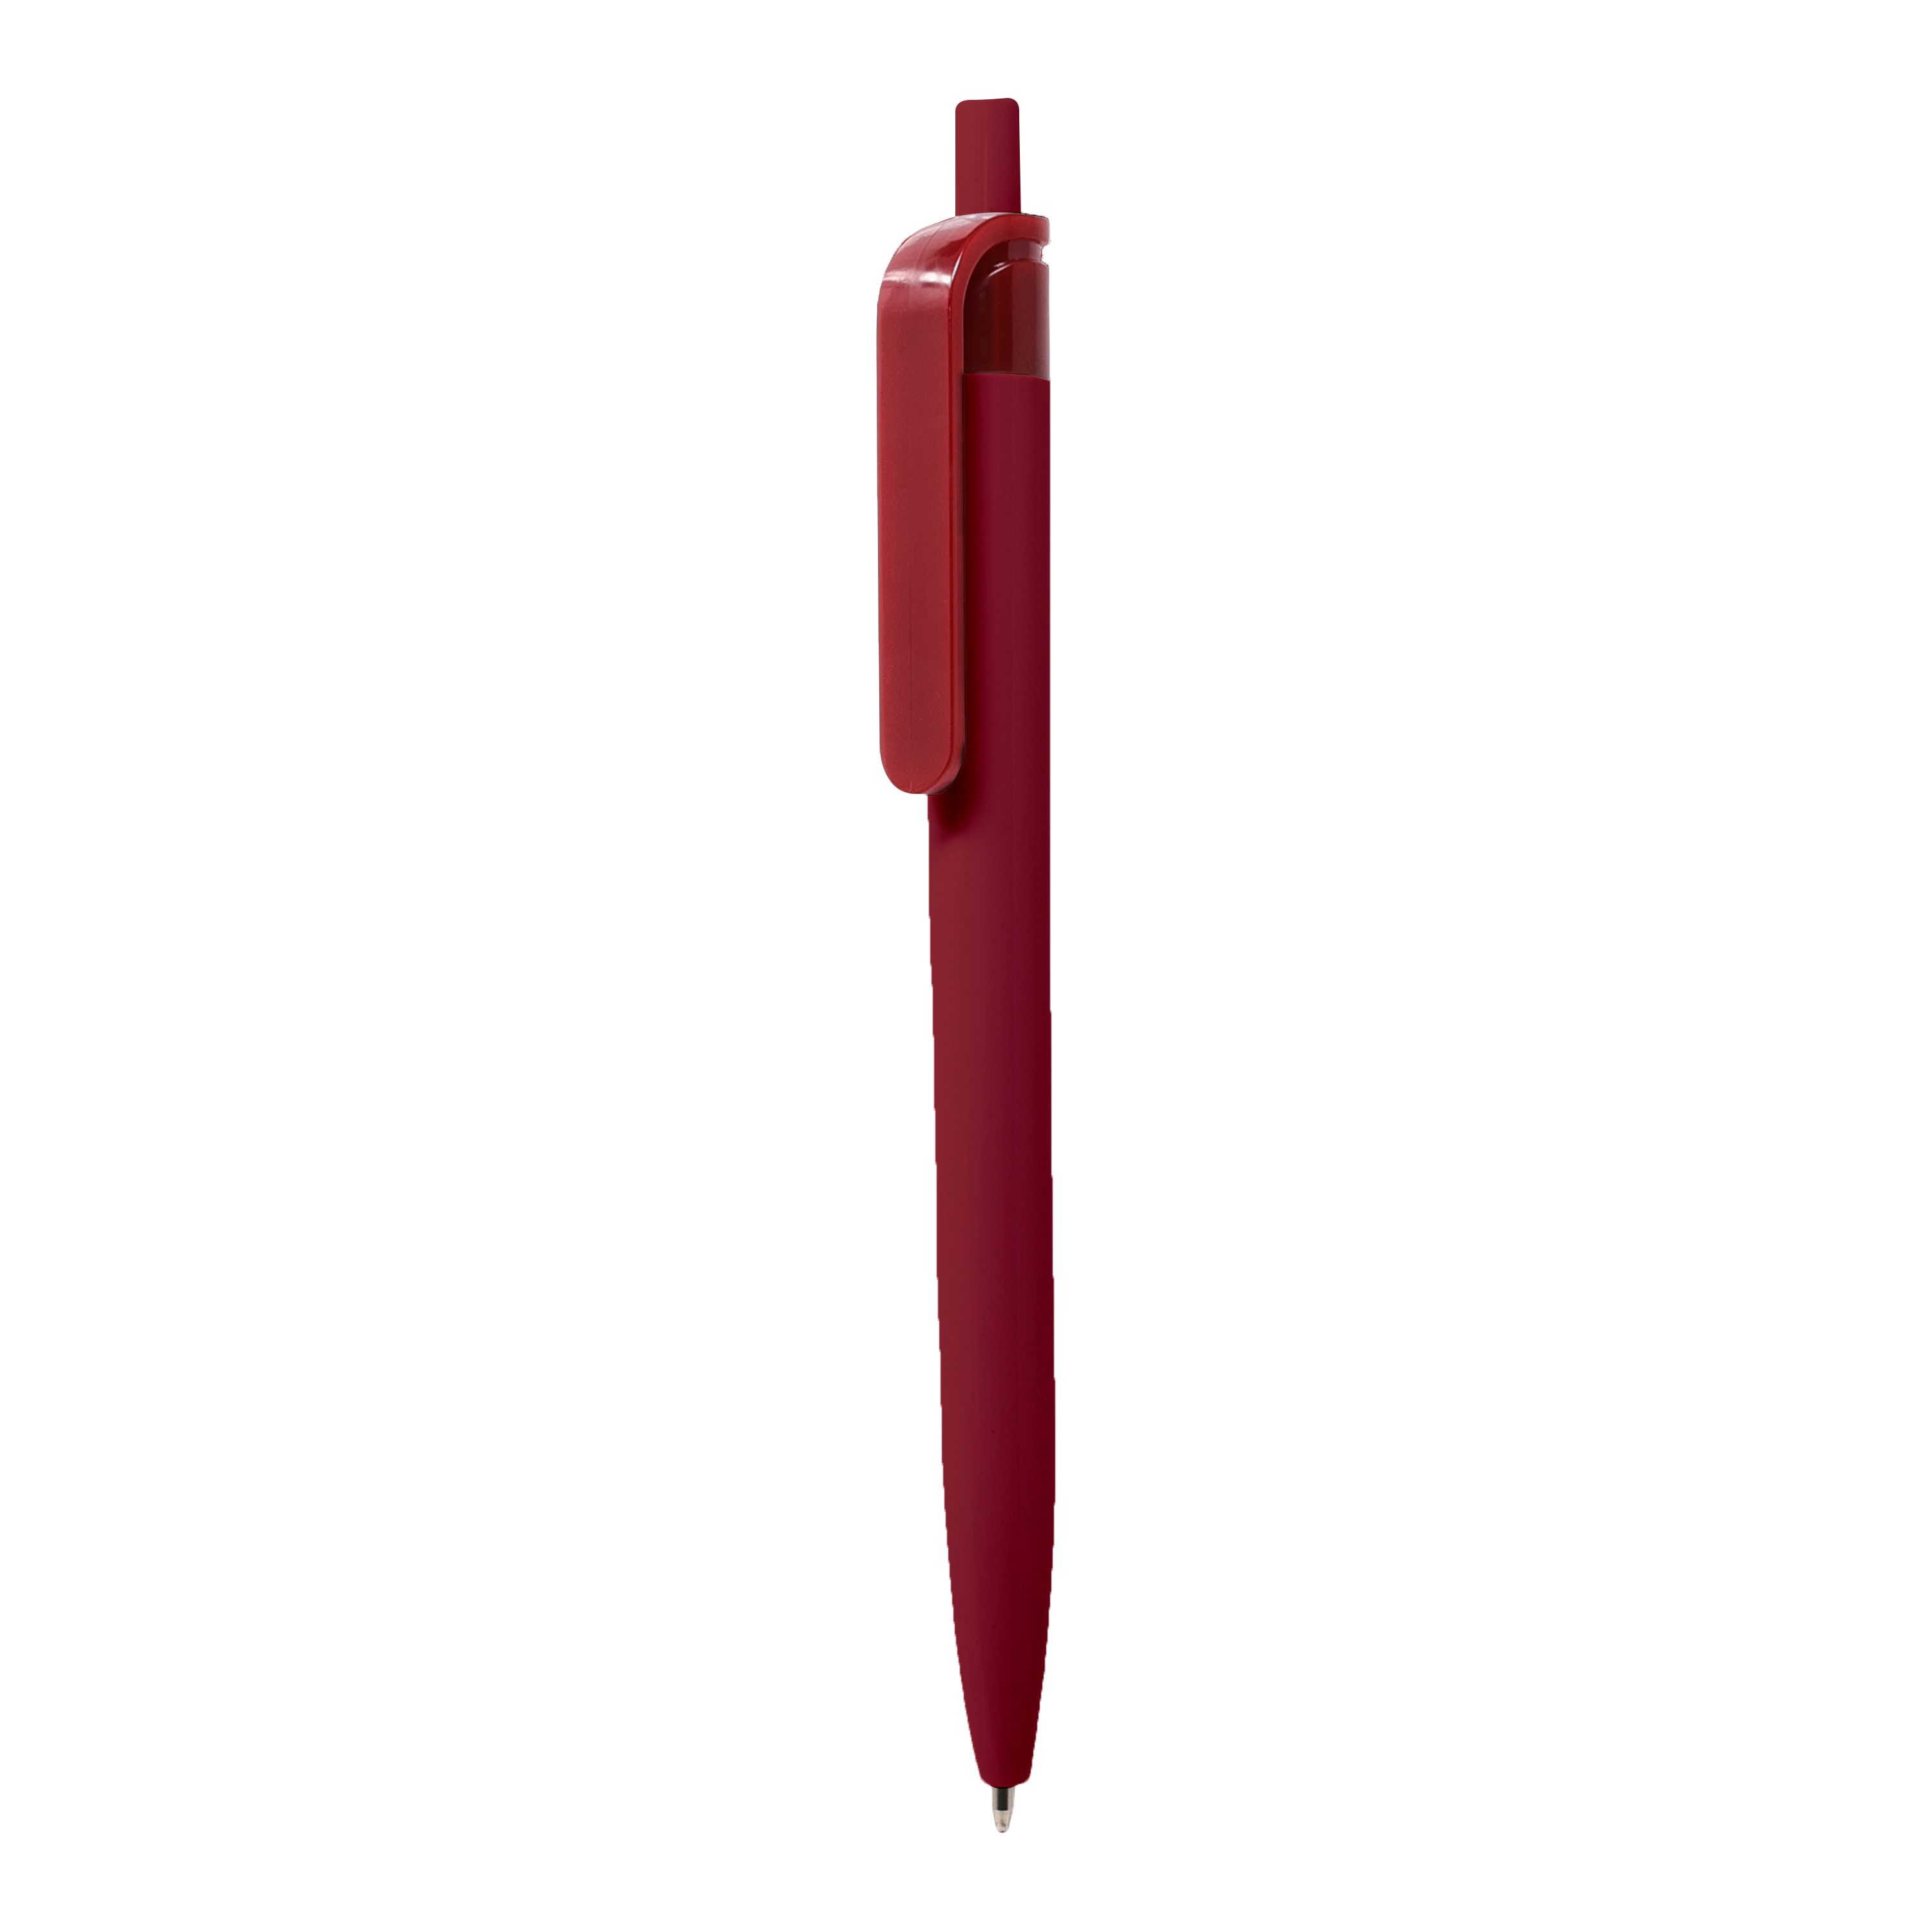 Bolígrafo Xuper
Color rojo completo